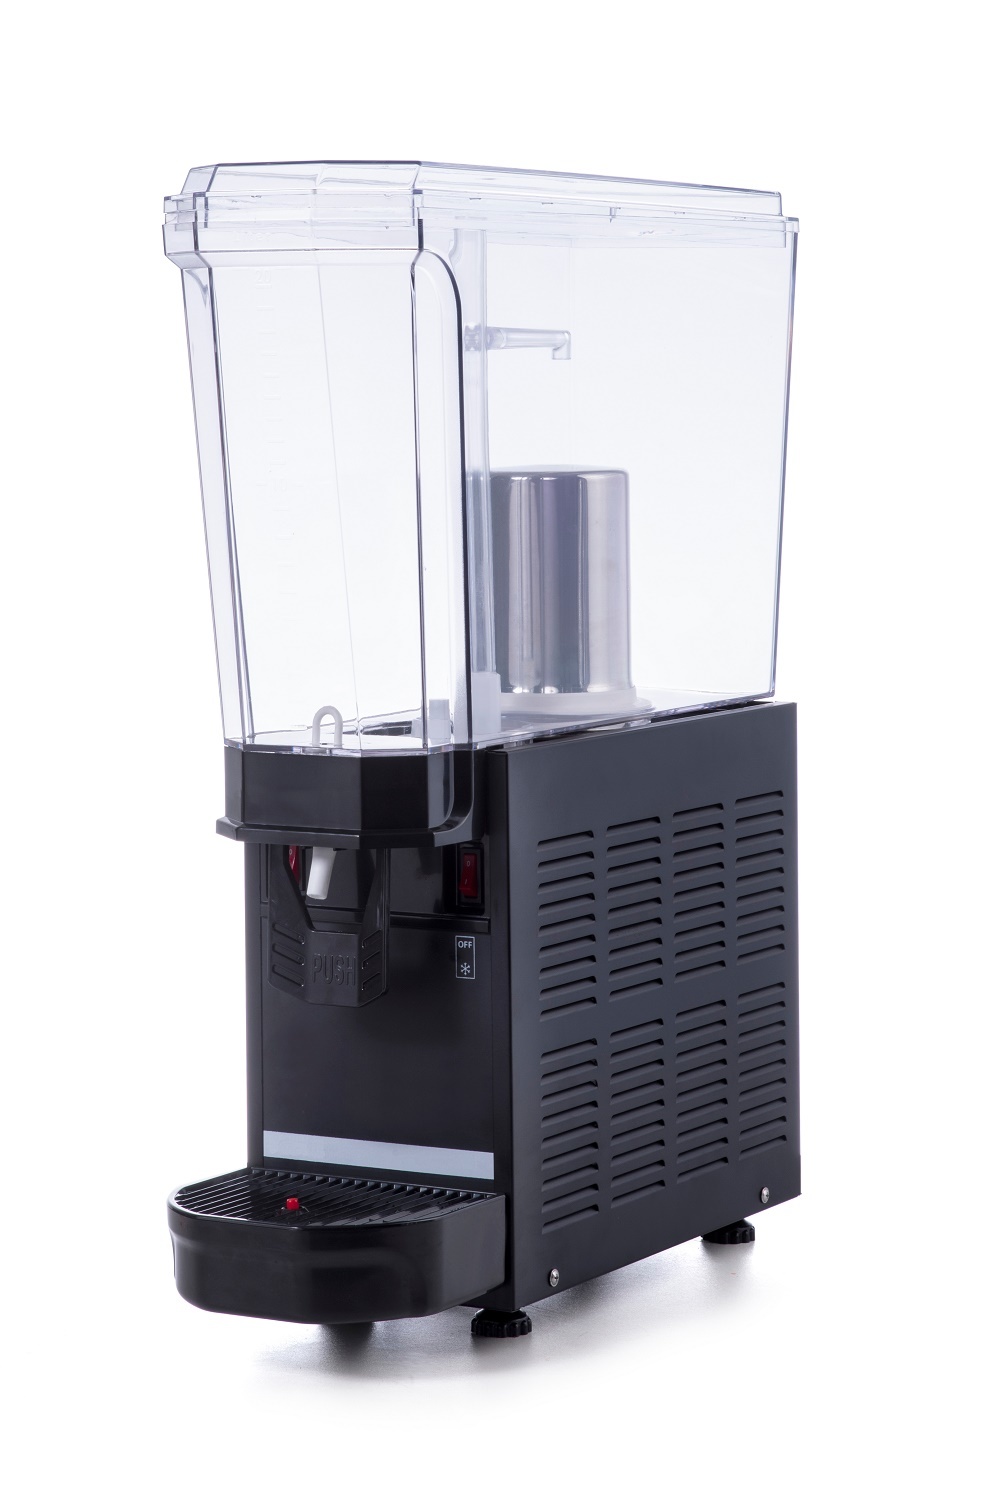 Kaltgetränke-Dispenser | 20 Liter |  +5/+10 °C | 185x520x(h)665mm